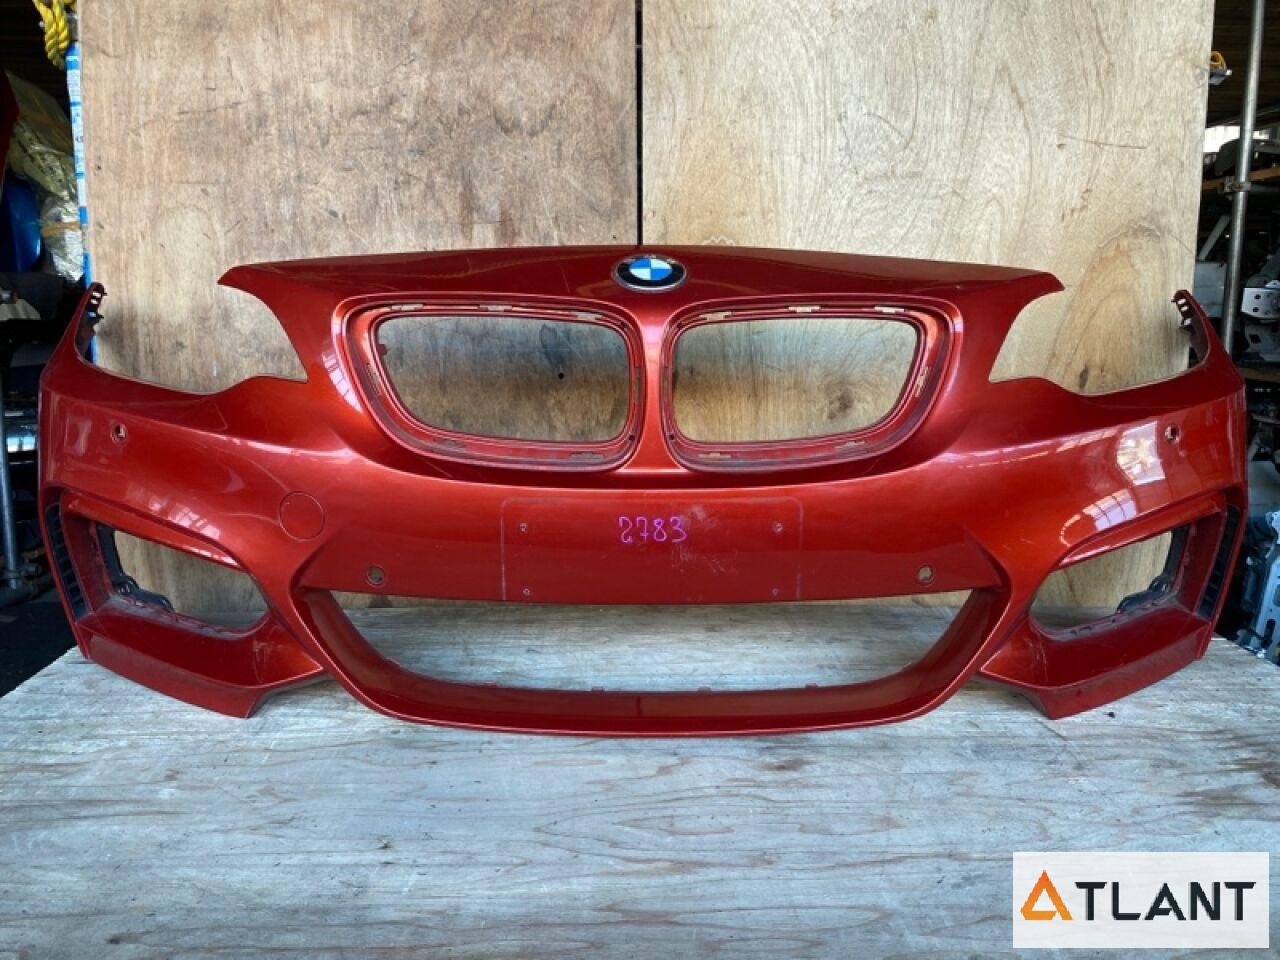 Запчасть Бампер  передний BMW 2-SERIES 5111  8055299 Контрактный Цвет: Красный перламутр; Год: 2014; Пустой, под сонары. Дефект верхнего левого крепления, подорван, царапины.

Бампер снят с автомобиля:
BMW 2 SERIES F22 2014

Бампер подходит:
BMW 2-Series 1 поколение 2014–2021 F (F22) любой двигатель